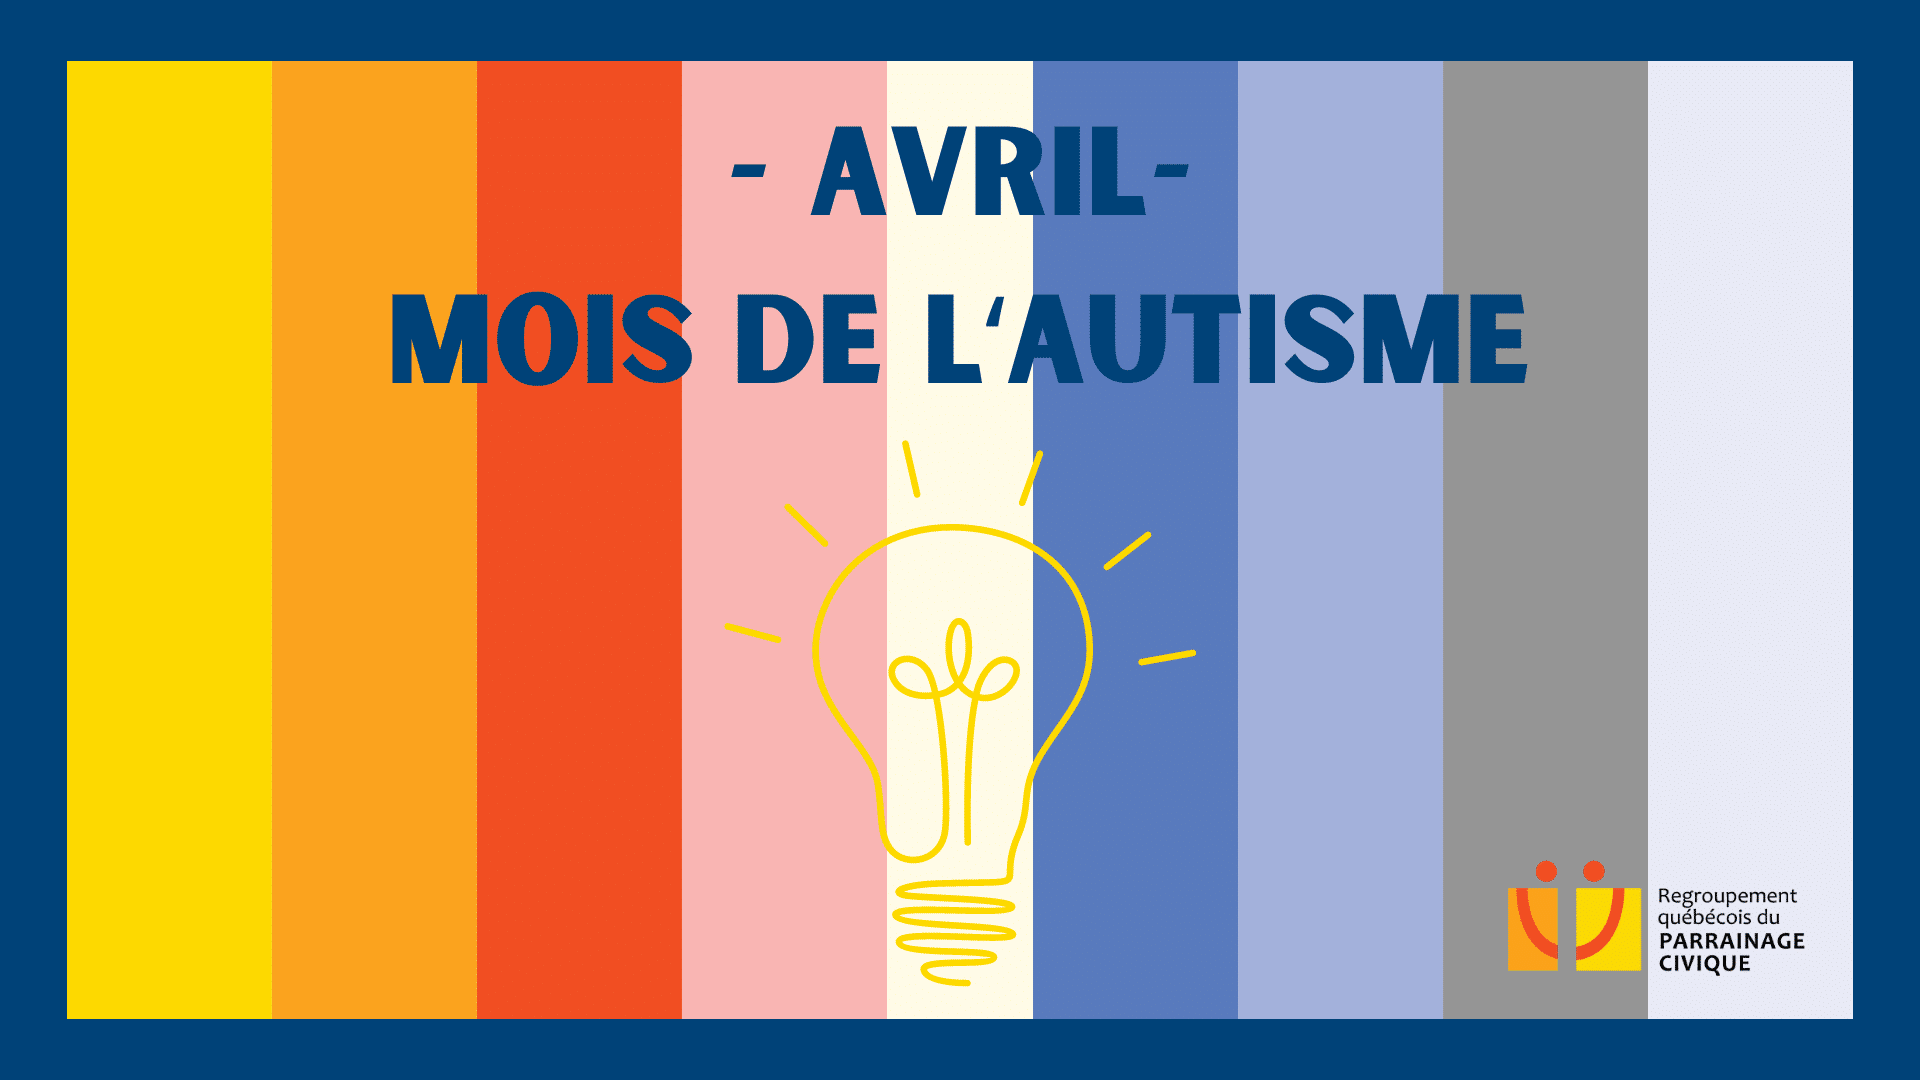 Visuel fait maison représentant Avril, mois de l'autisme, sur des bandes de couleurs du regroupement québécois du parrainage civique